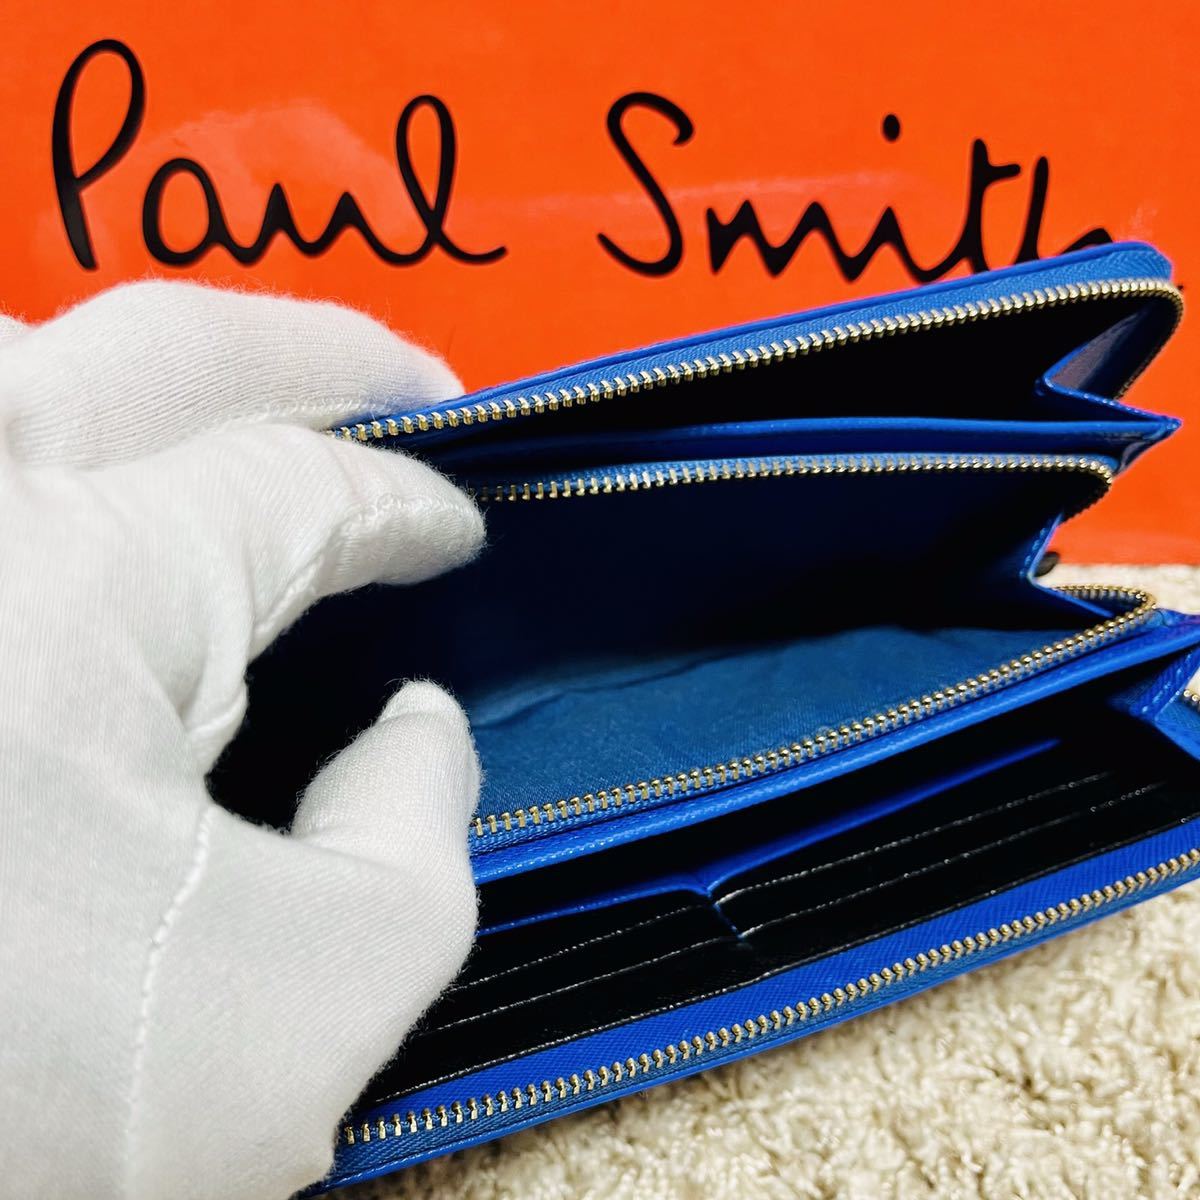 ポールスミス PaulSmith スミシーハート 長財布 ロングウォレット ラウンドファスナー ブルー かわいい バッグ メンズ レディース 6492 